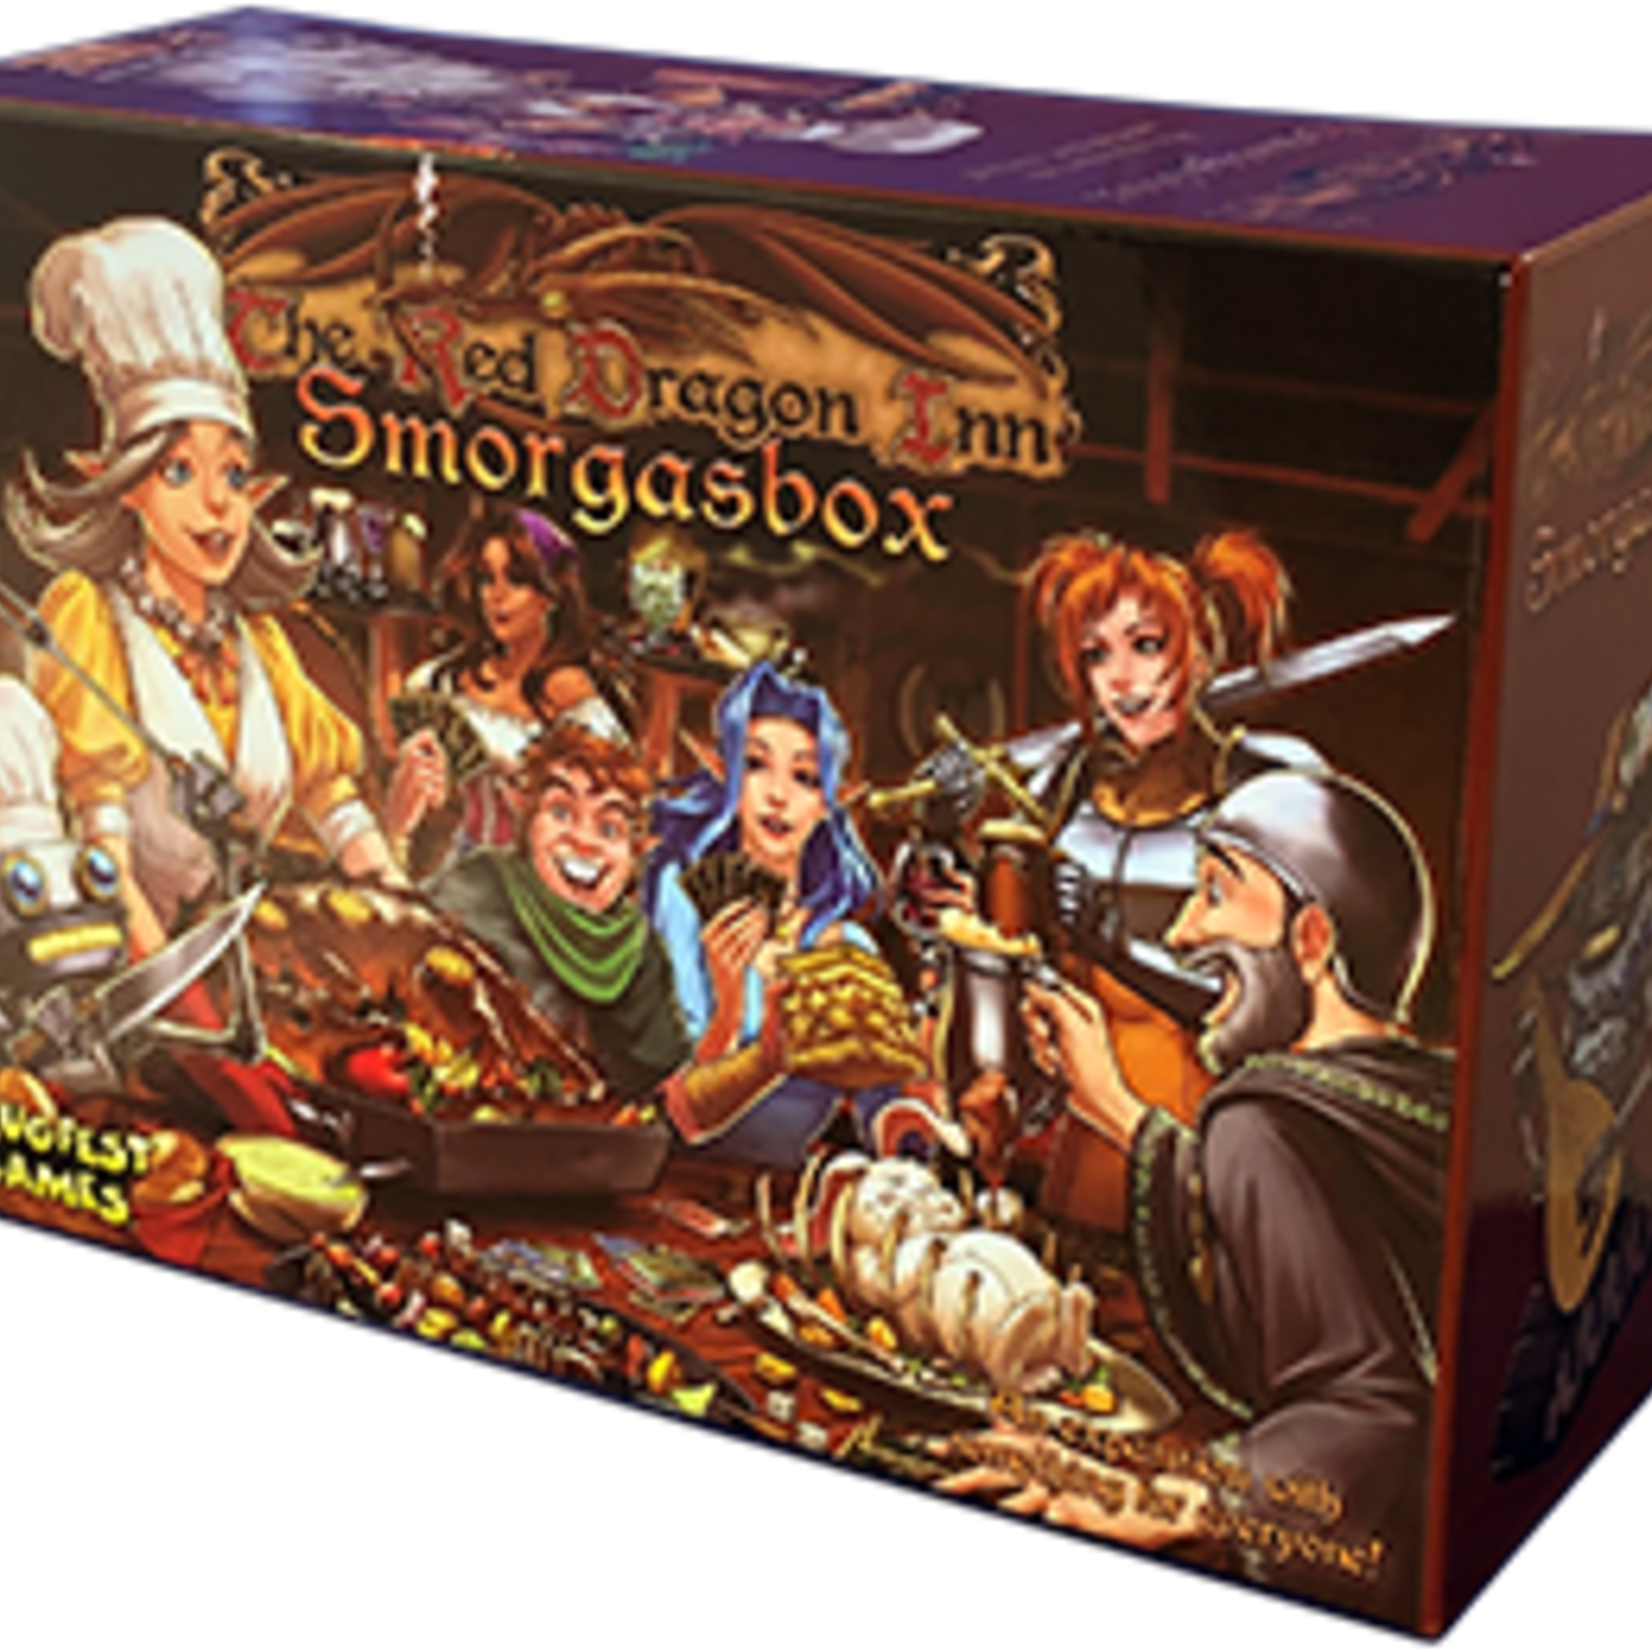 Slugfest Games Red Dragon Inn: Smorgasbox